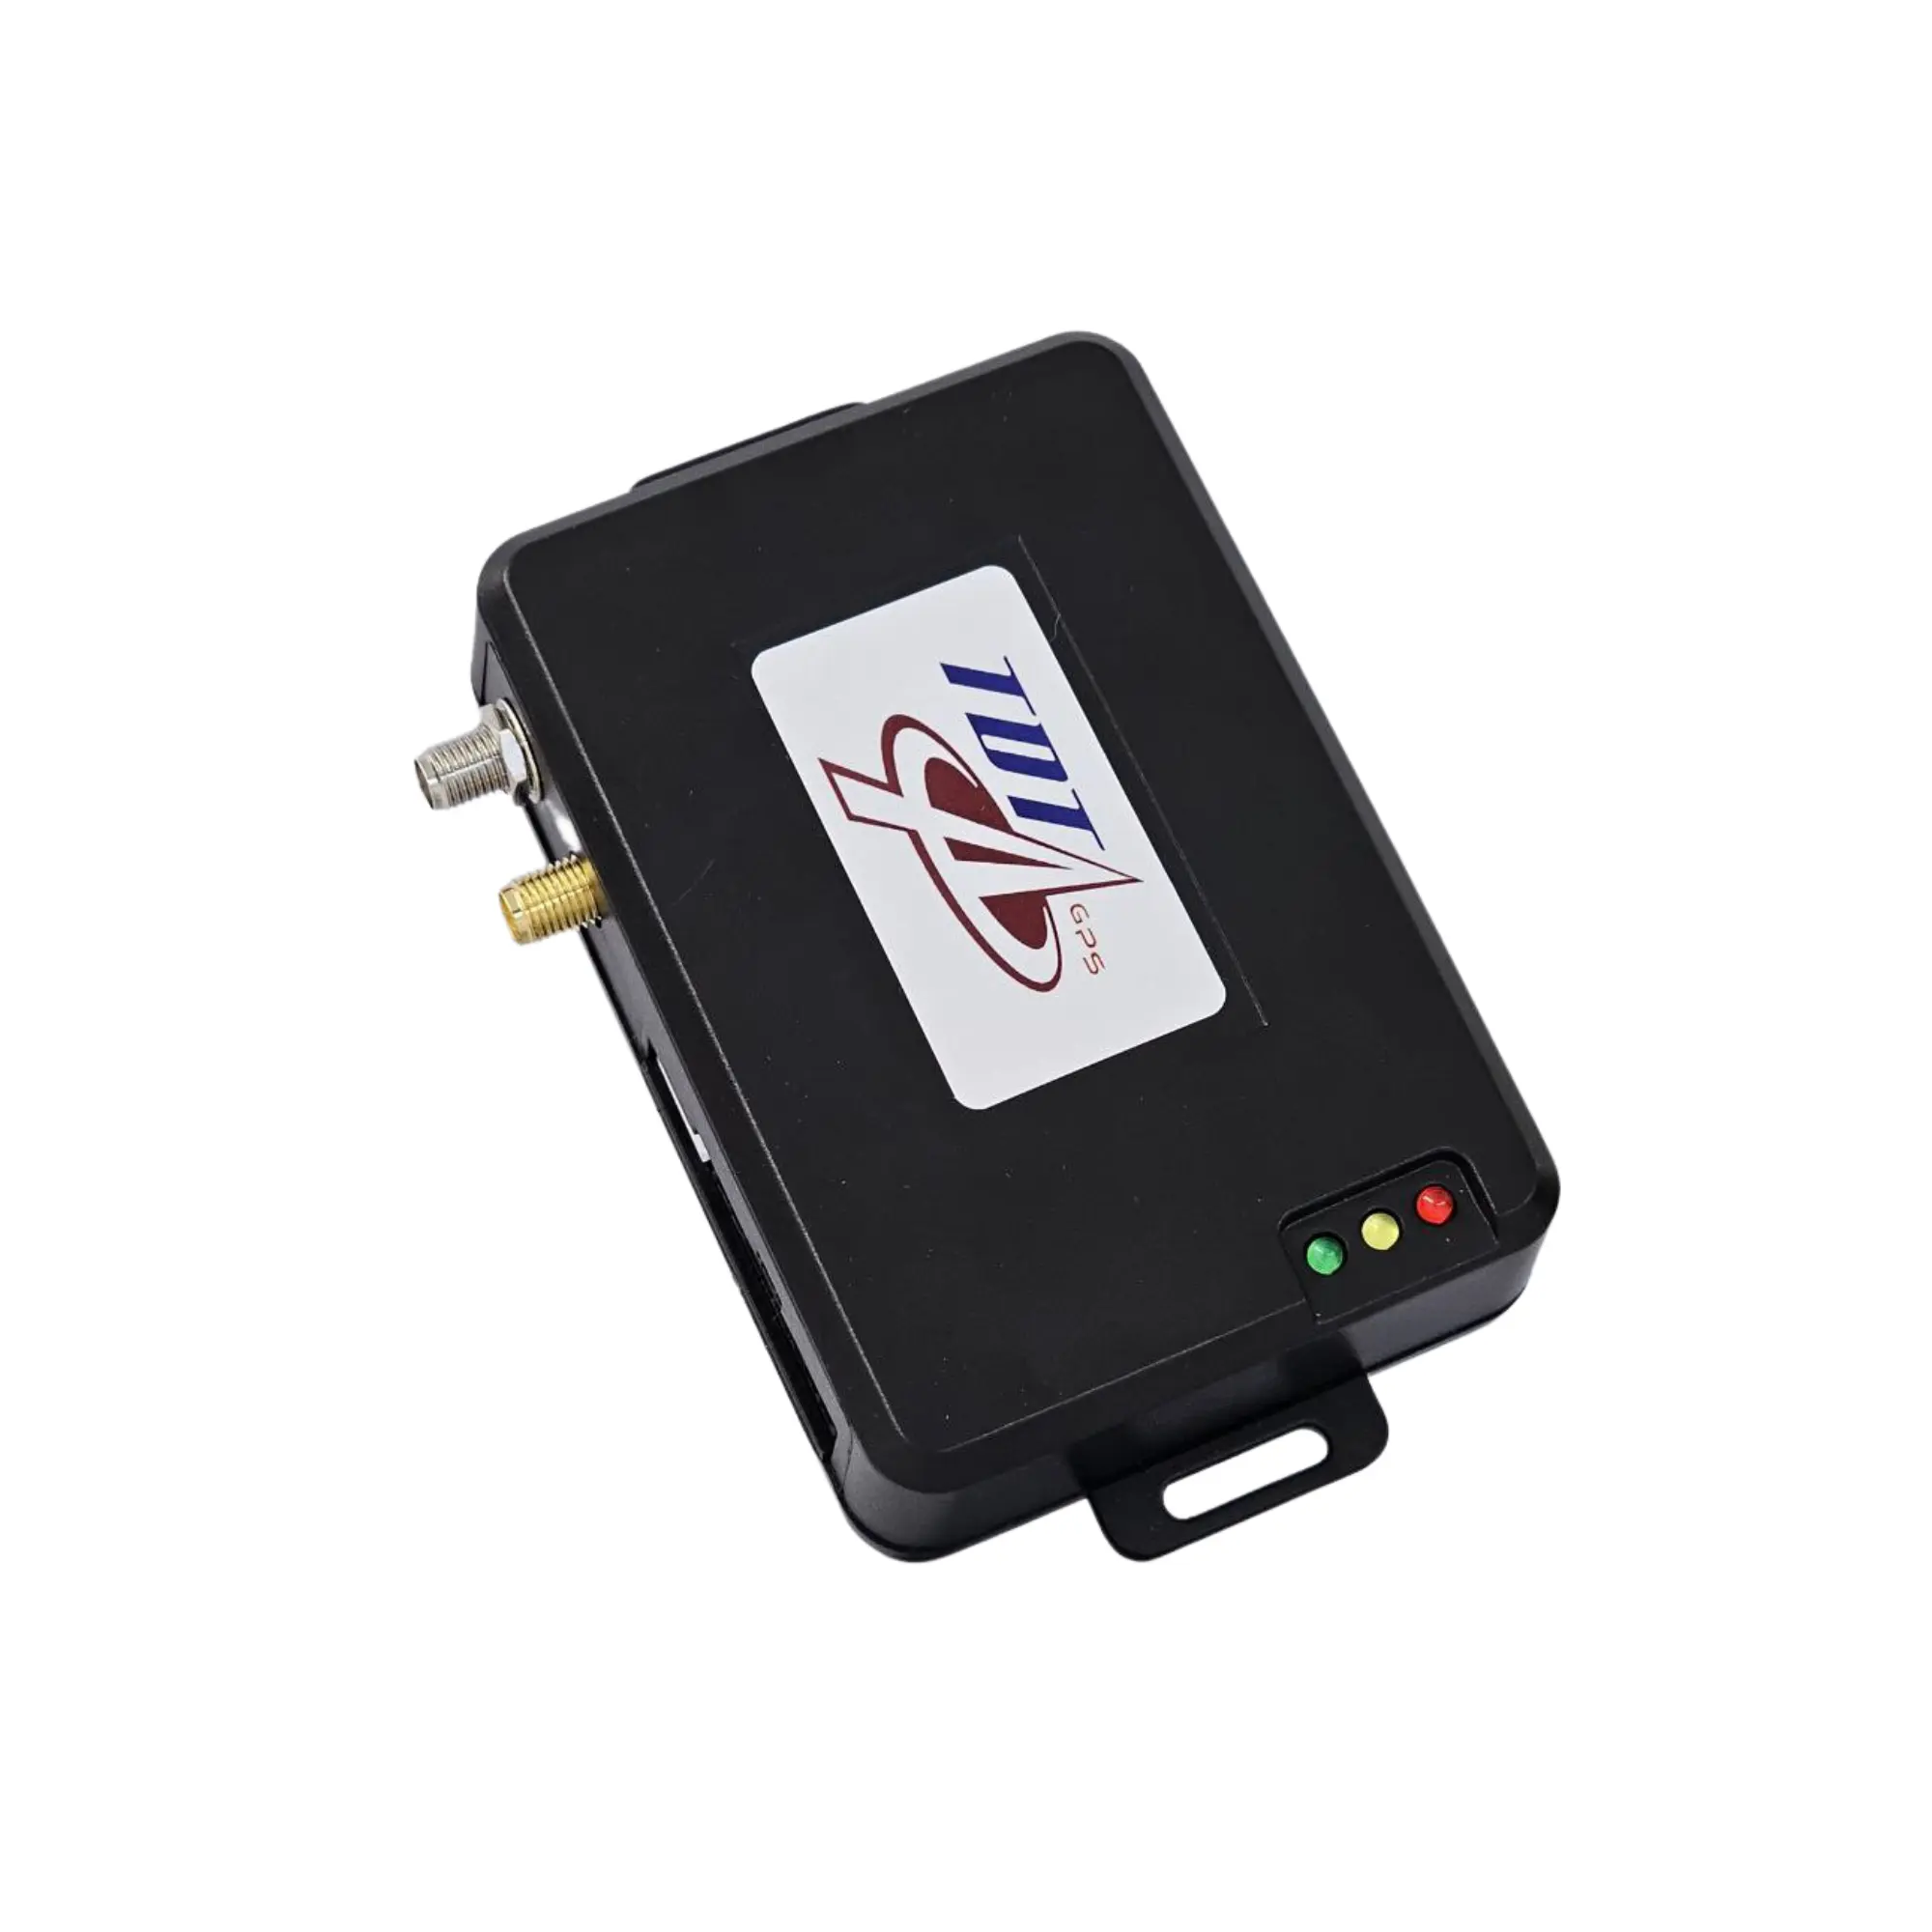 Desempenho de alta qualidade GPS Tracker com Bluetooth Features, Sensor de combustível, Trailer ID e Driver ID Support for Monitoring